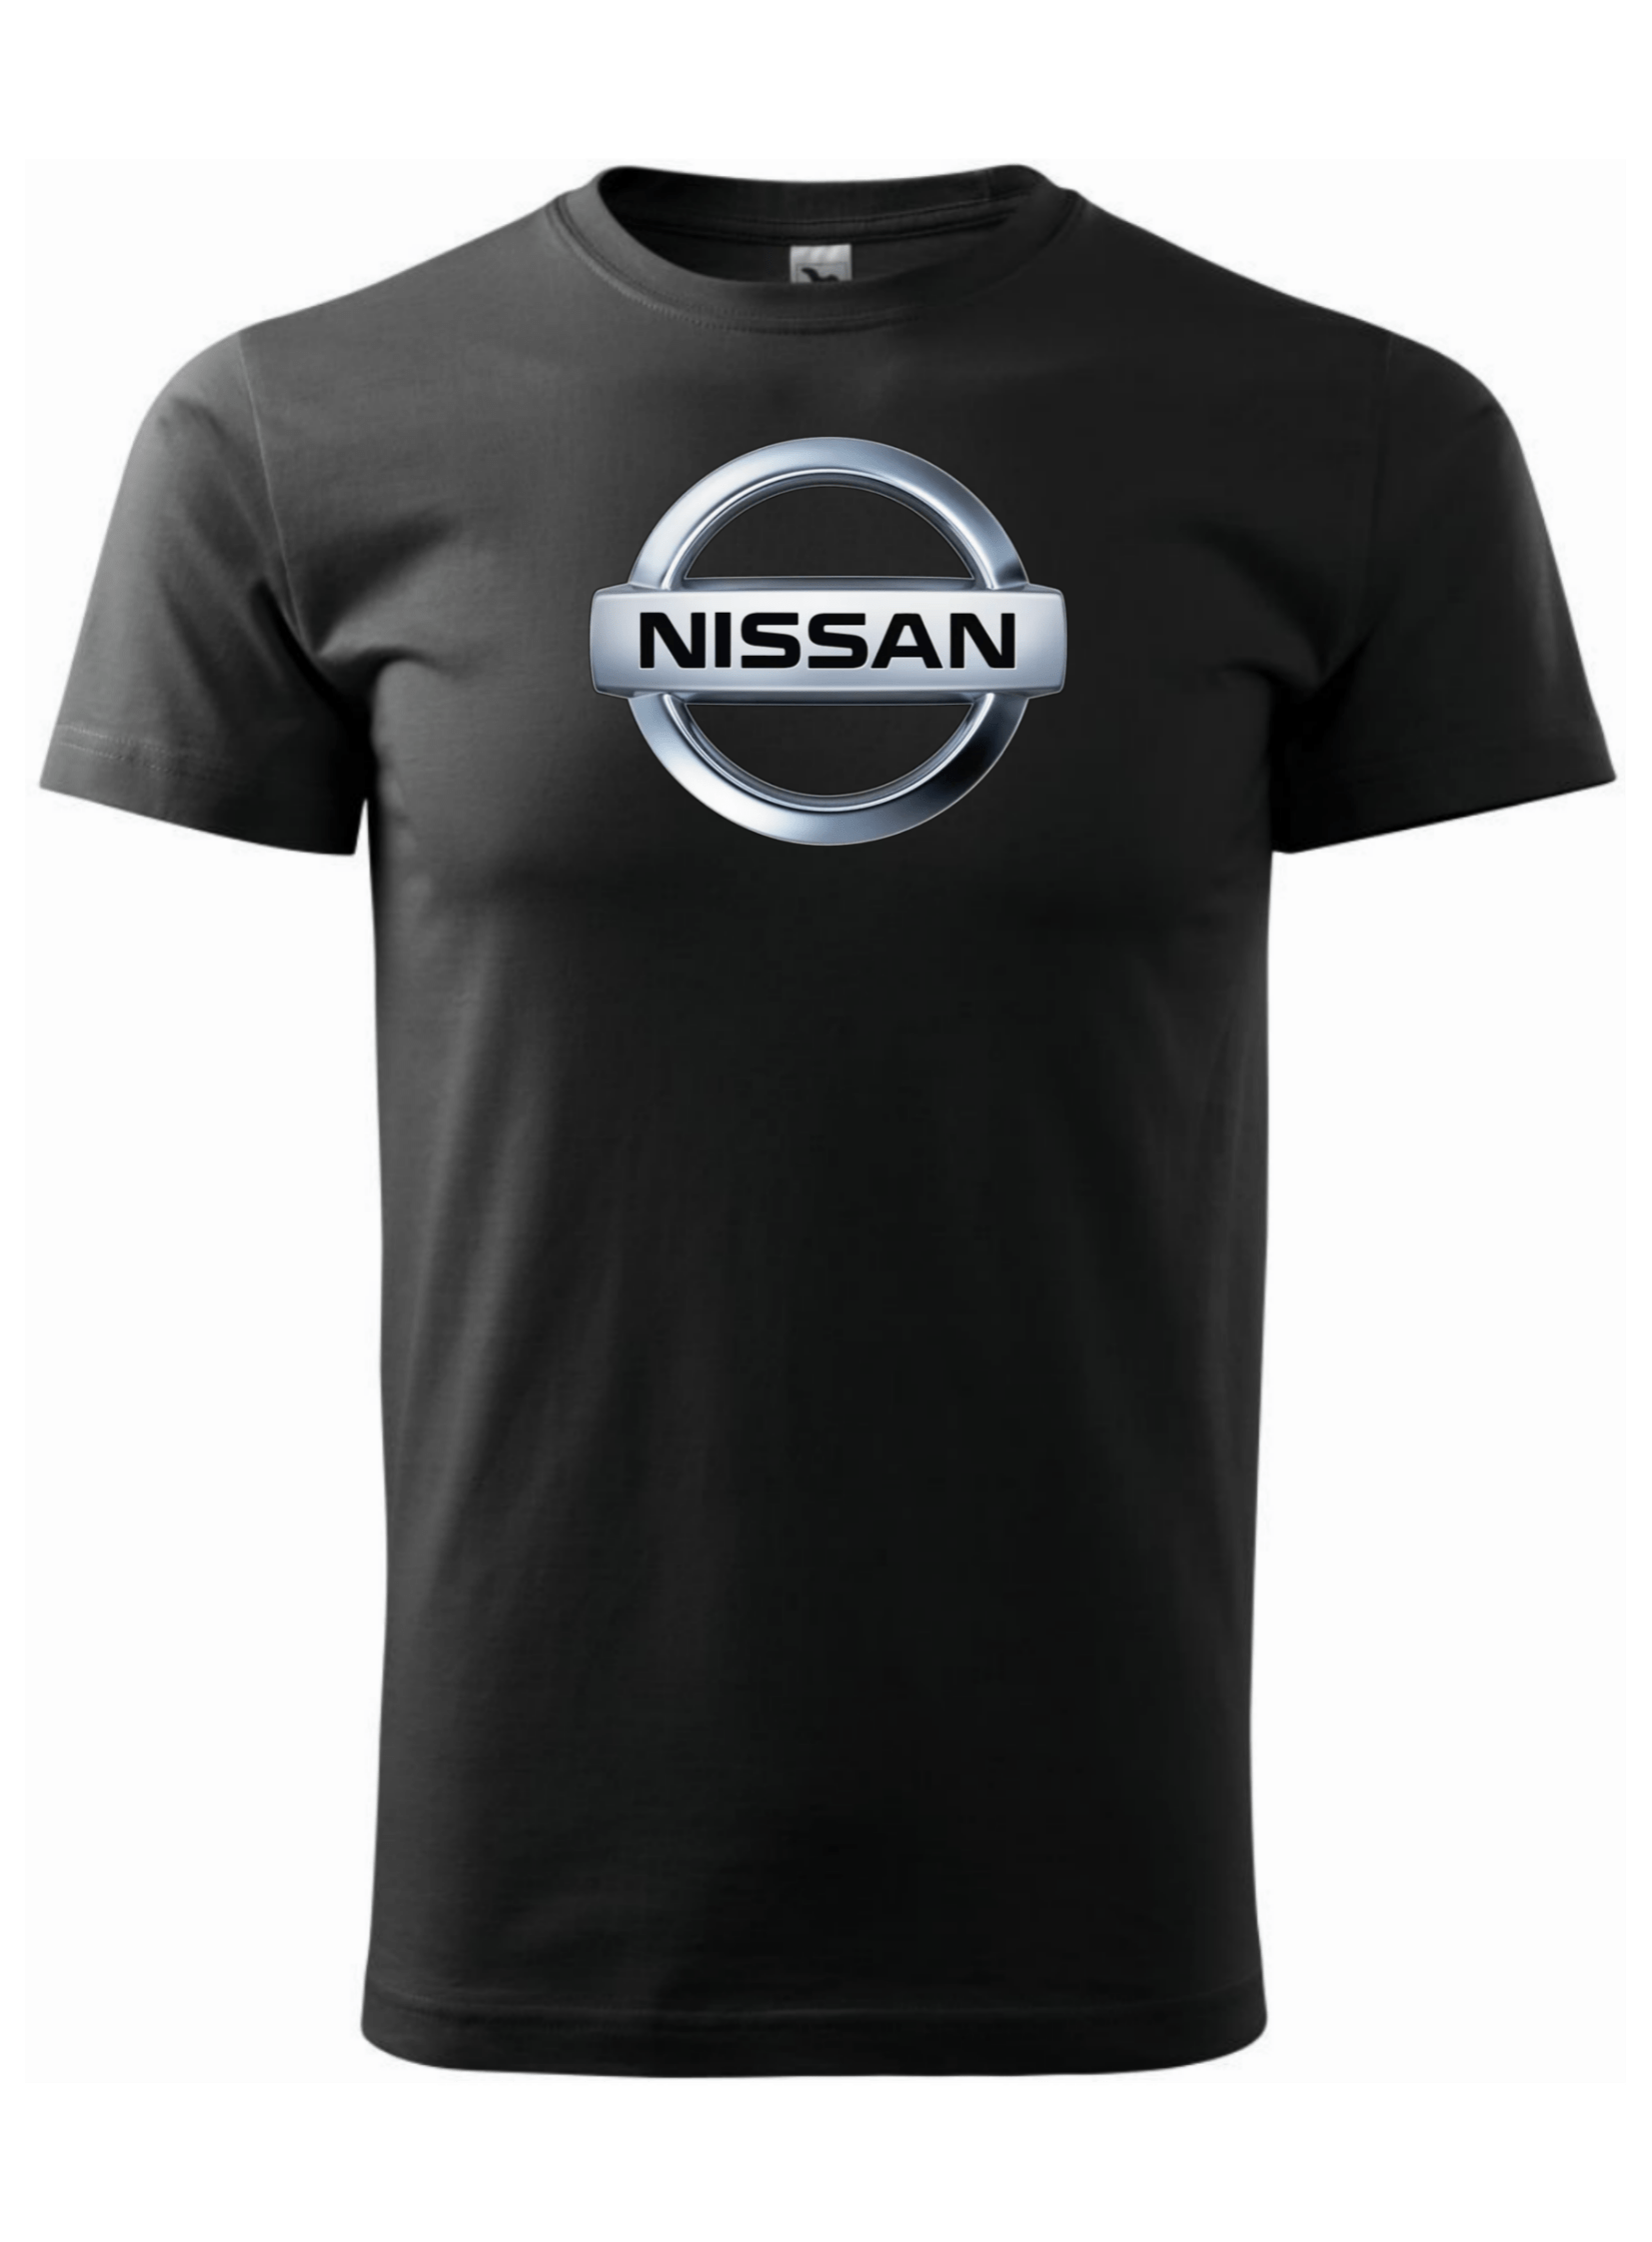 Pánské tričko s potiskem značky Nissan